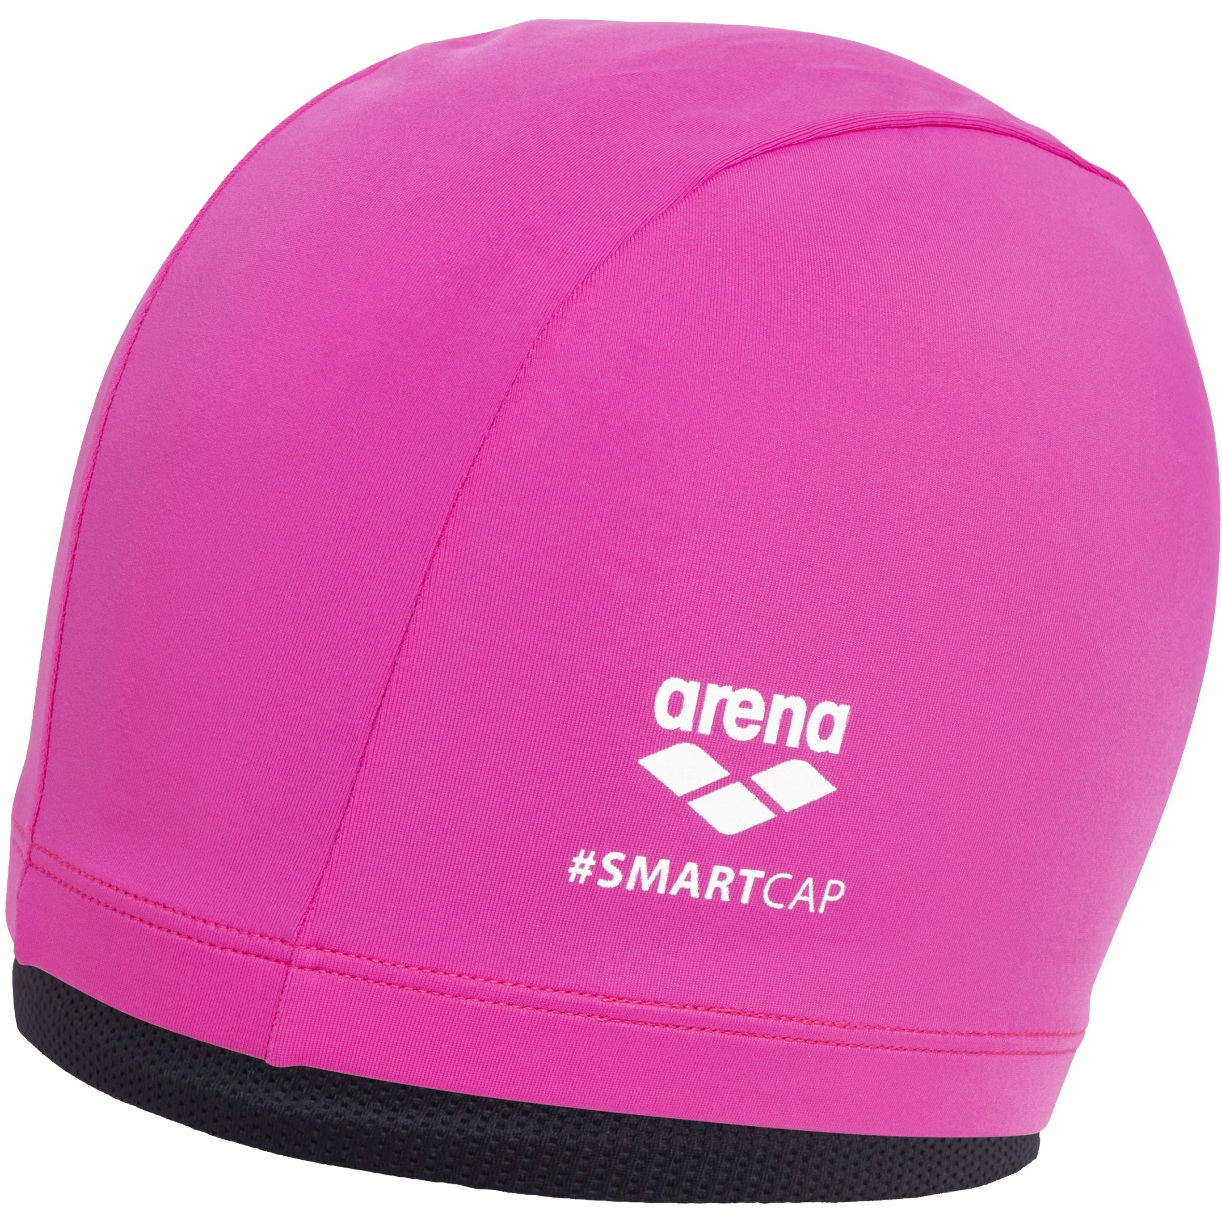 Picture of arena Smartcap Swim Cap - Fuchsia